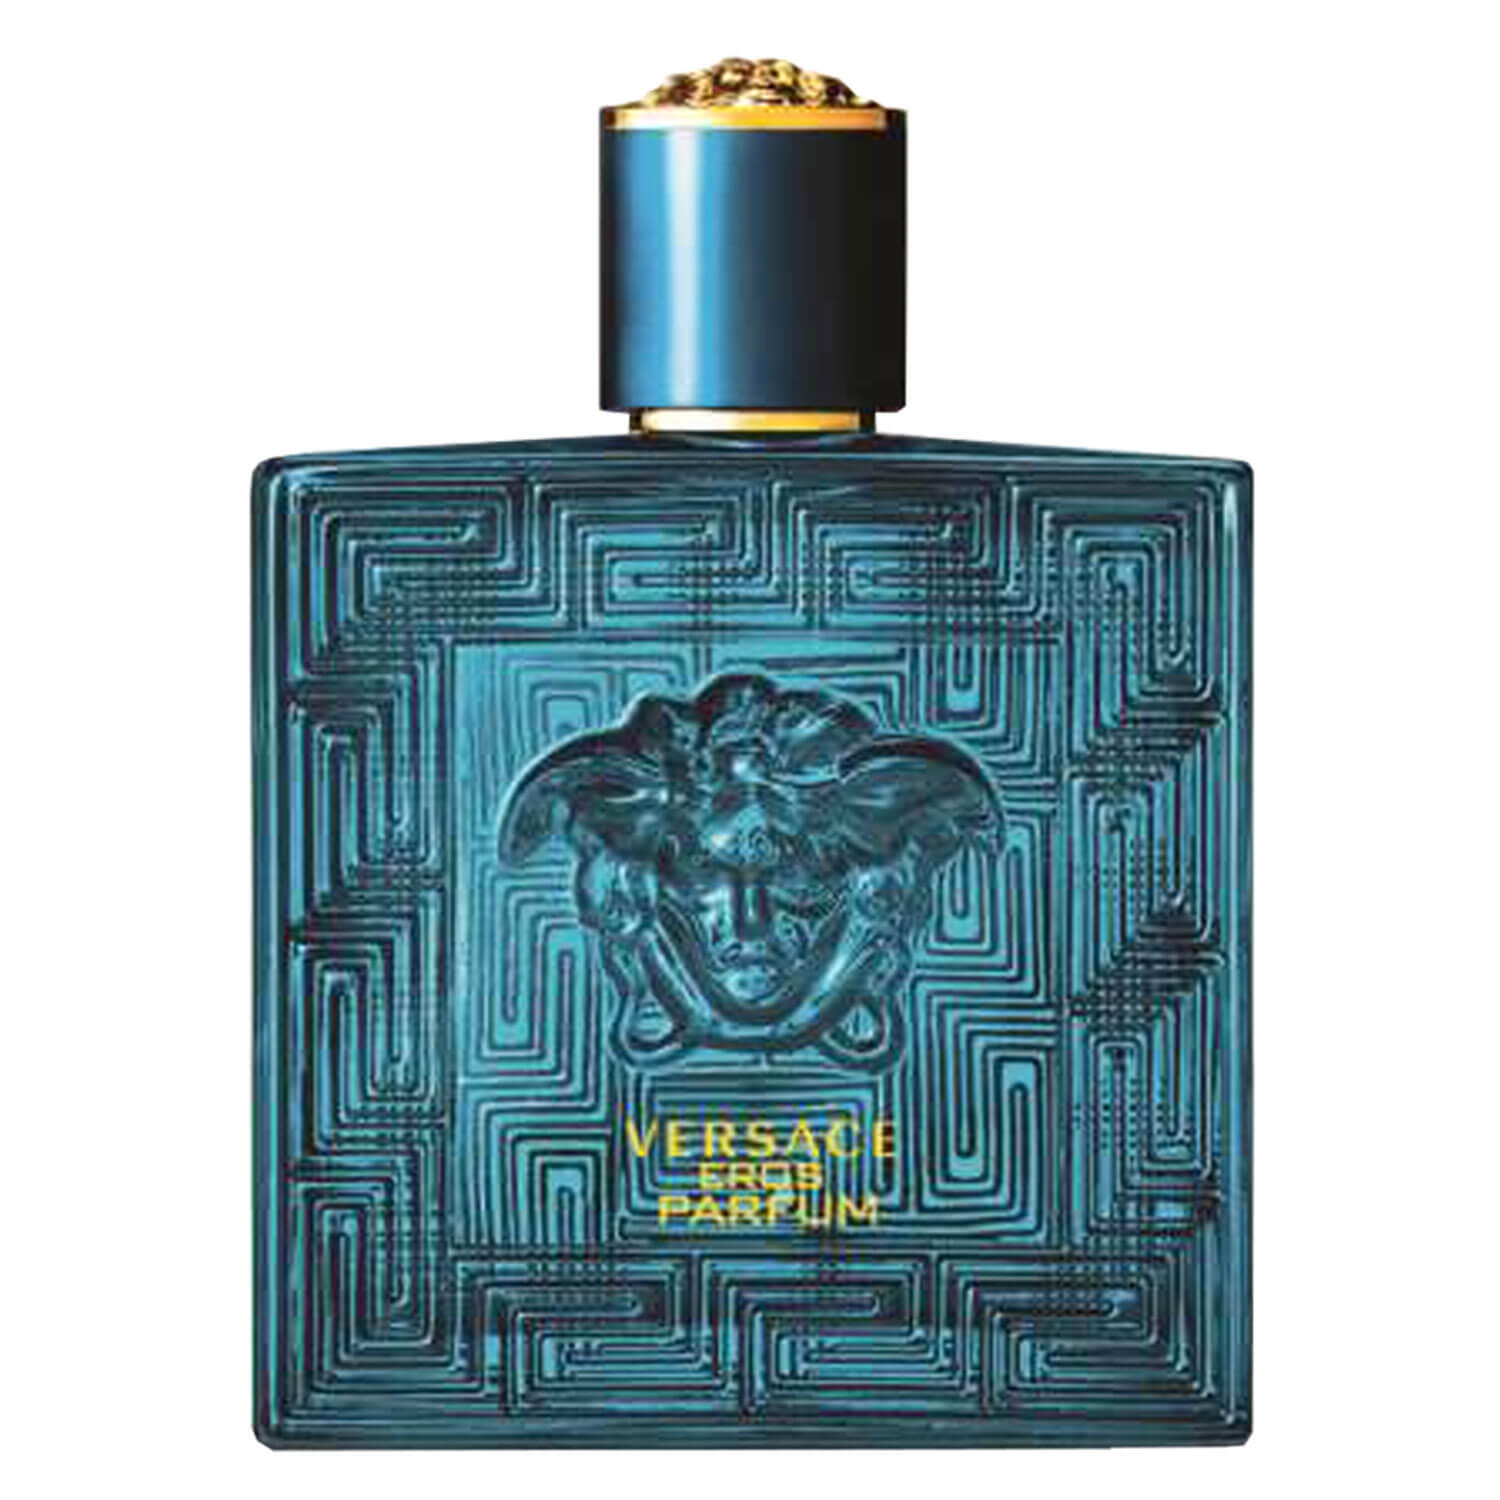 Produktbild von Versace Eros - Parfum for Men